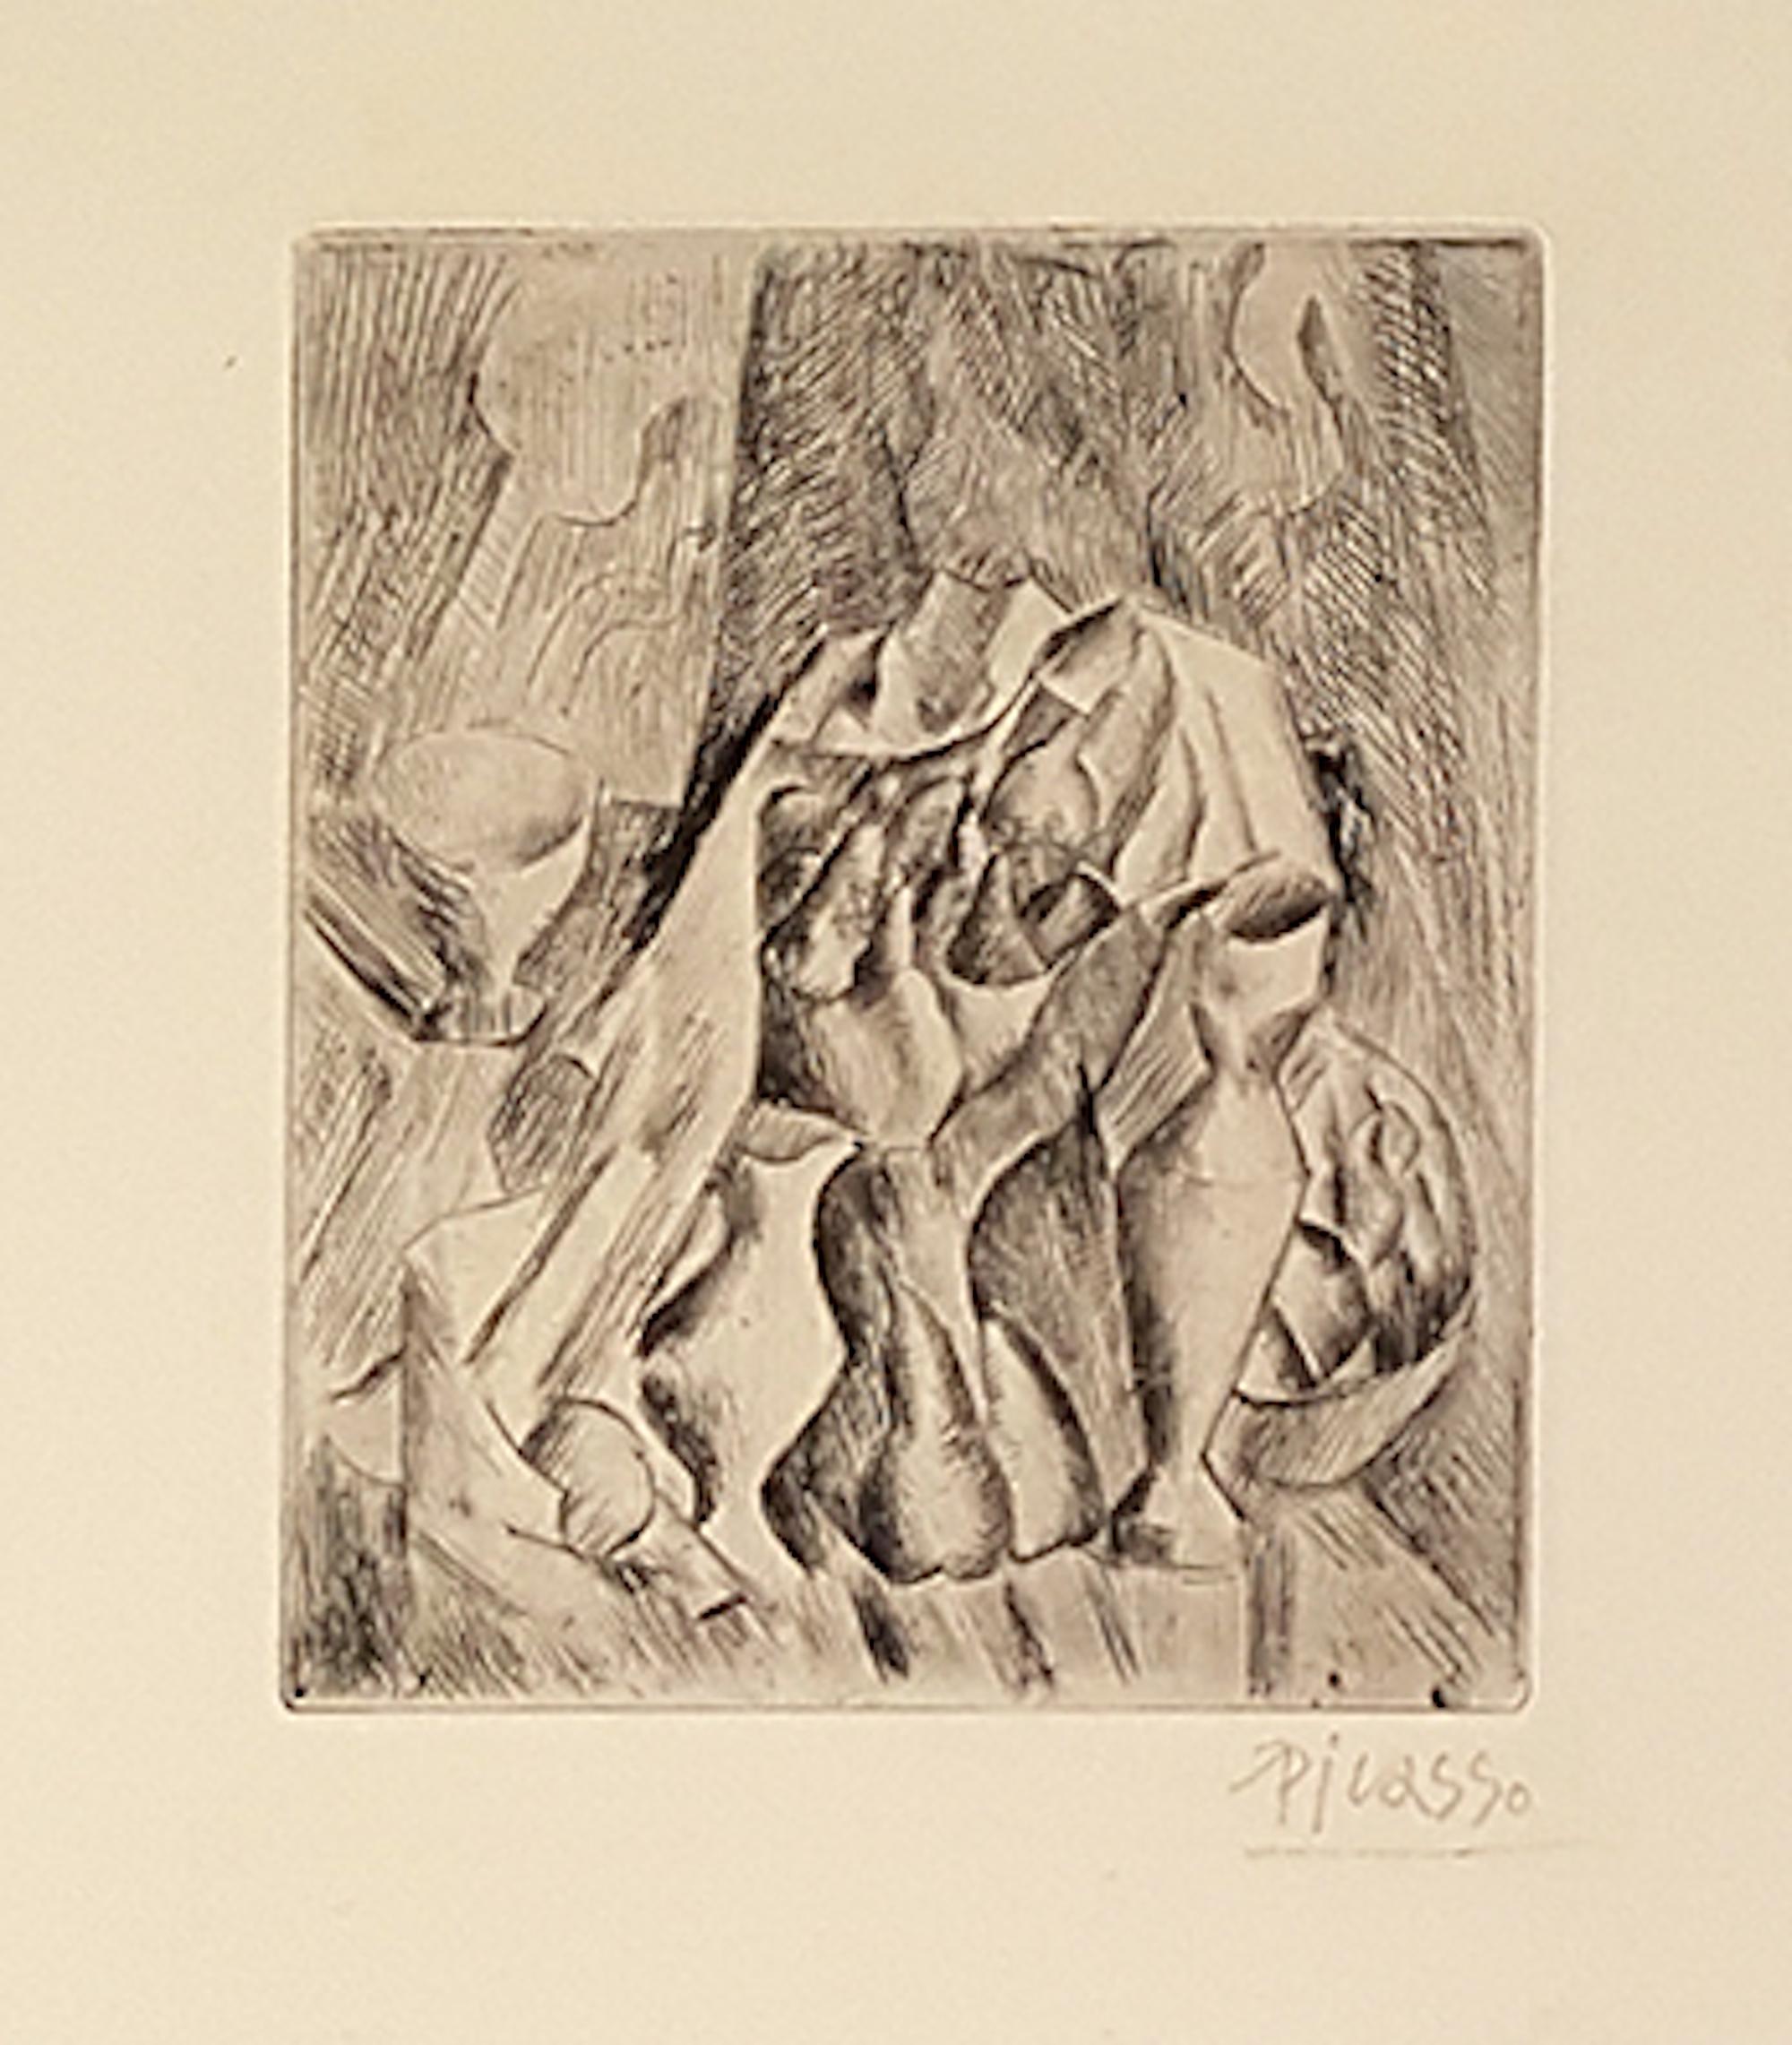 Nature Morte, Compotier est une rare pointe sèche en noir et blanc sur papier vergé de couleur ivoire, réalisée par Pablo Picasso en 1909. Edition de 100 exemplaires.

Signé à la main au crayon dans la marge inférieure droite.

Une première œuvre